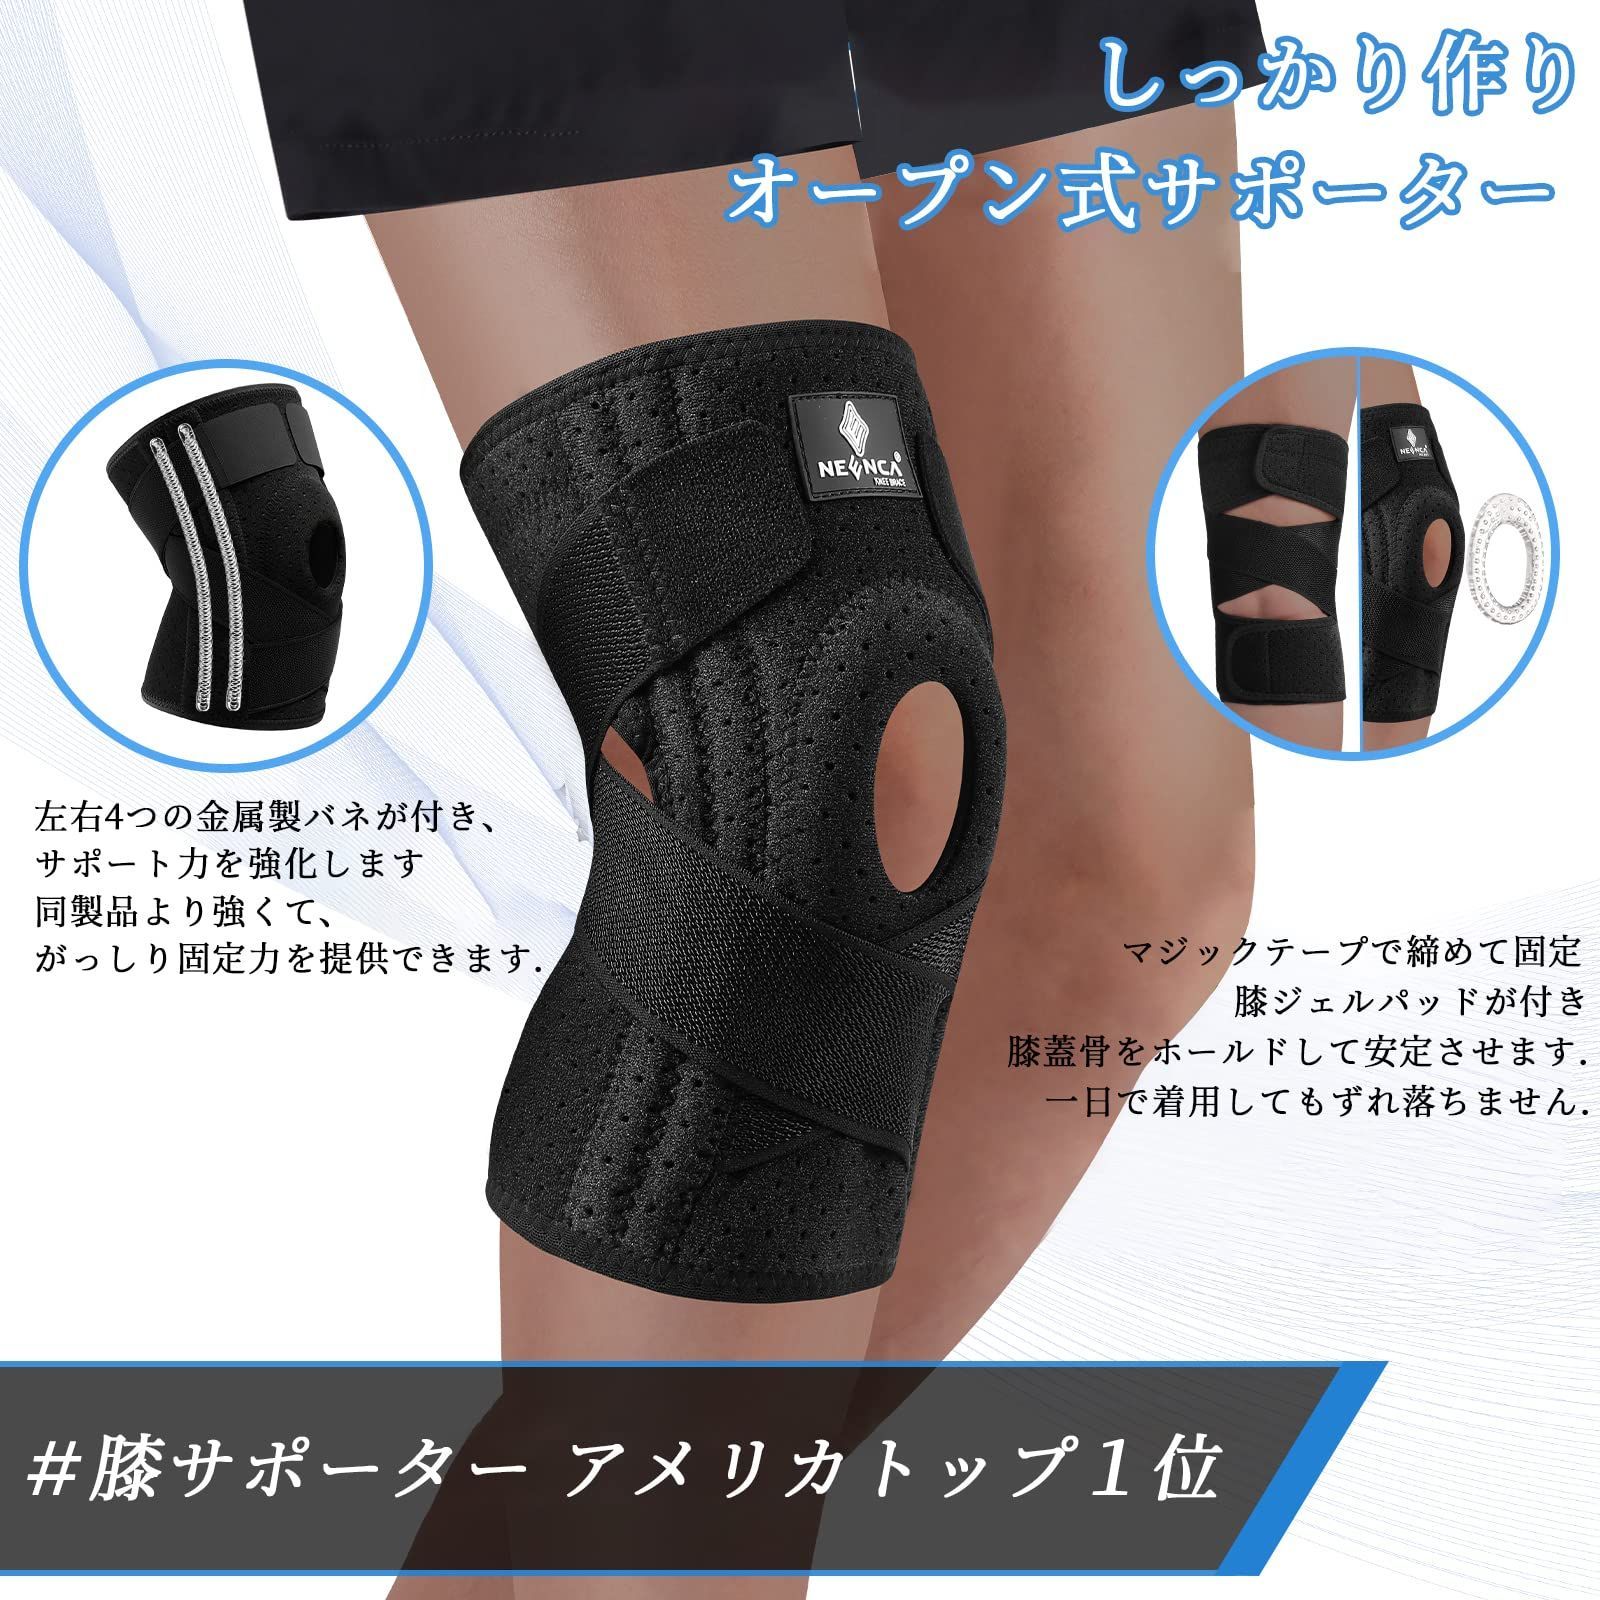 NEENCA 膝サポーター 1枚 銅繊維 スポーツ用 膝安定 通気性 サイズ S